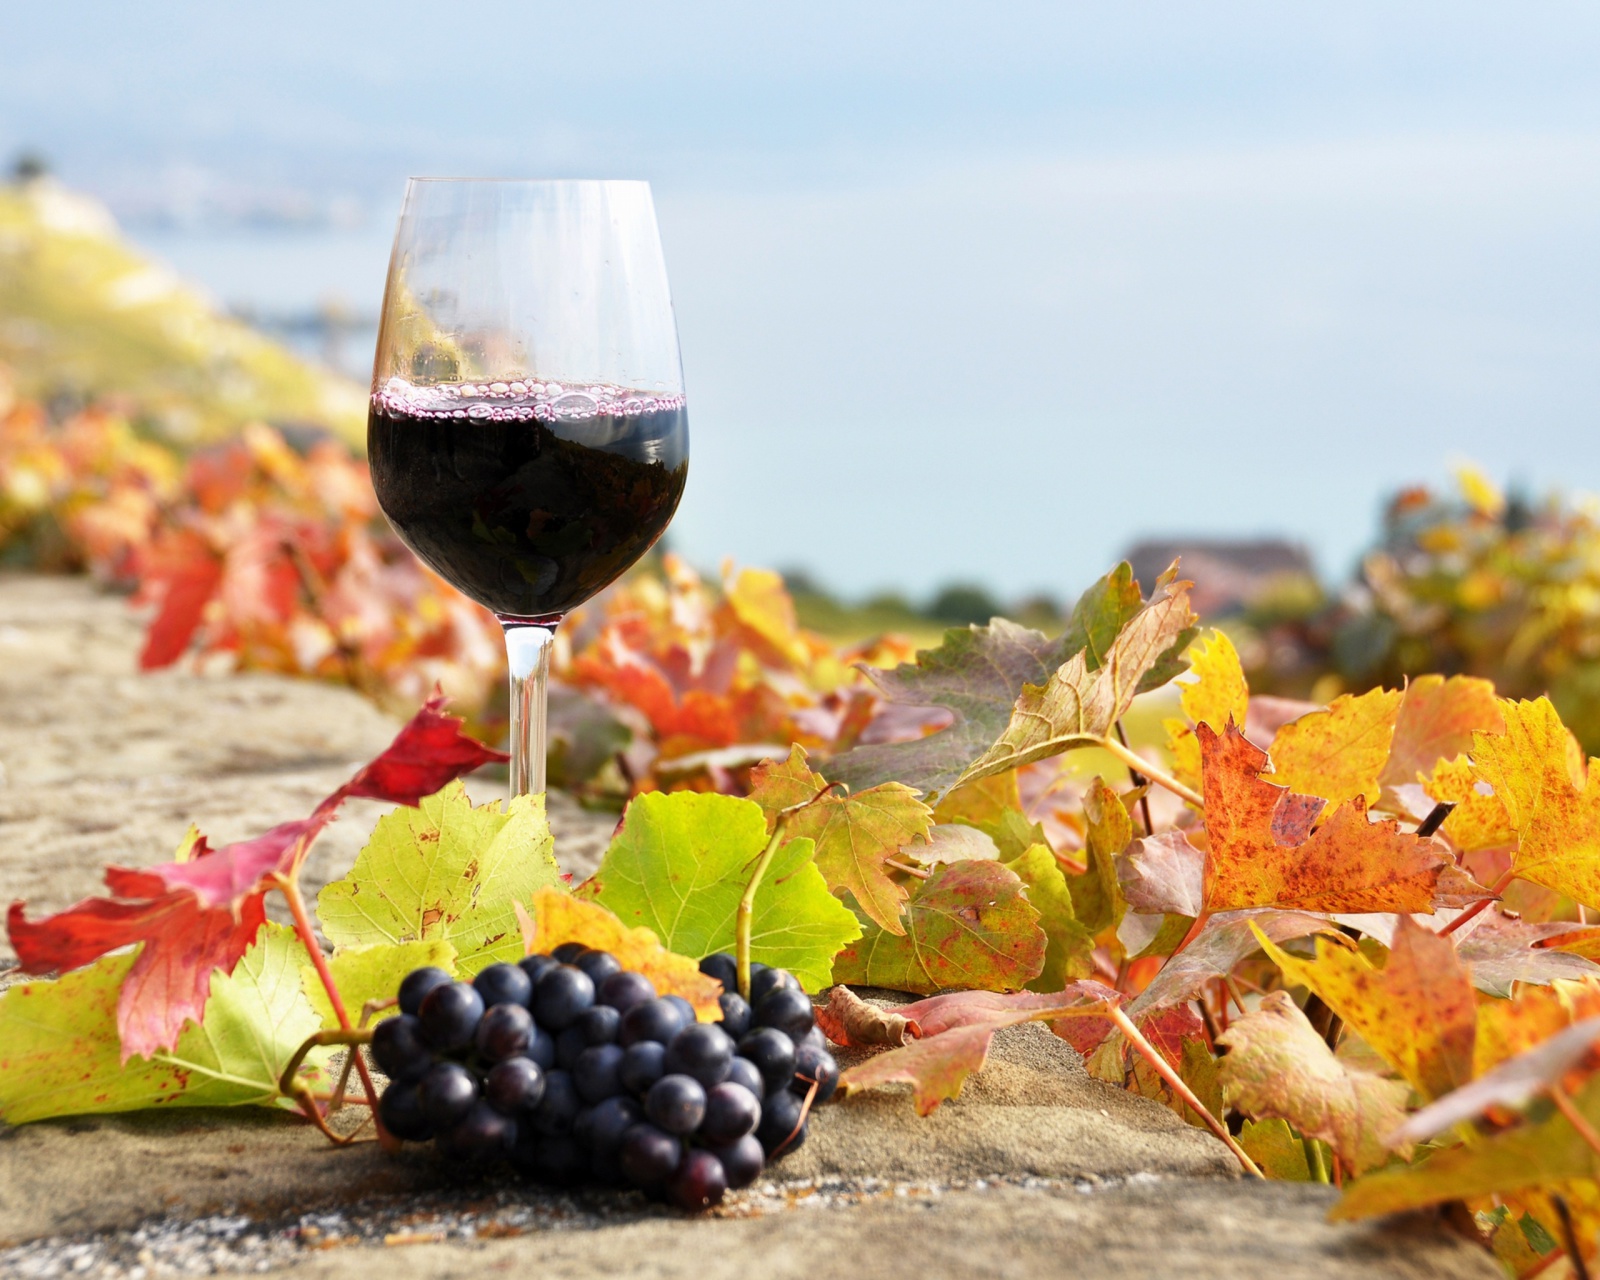 Обои Wine Test in Vineyards 1600x1280